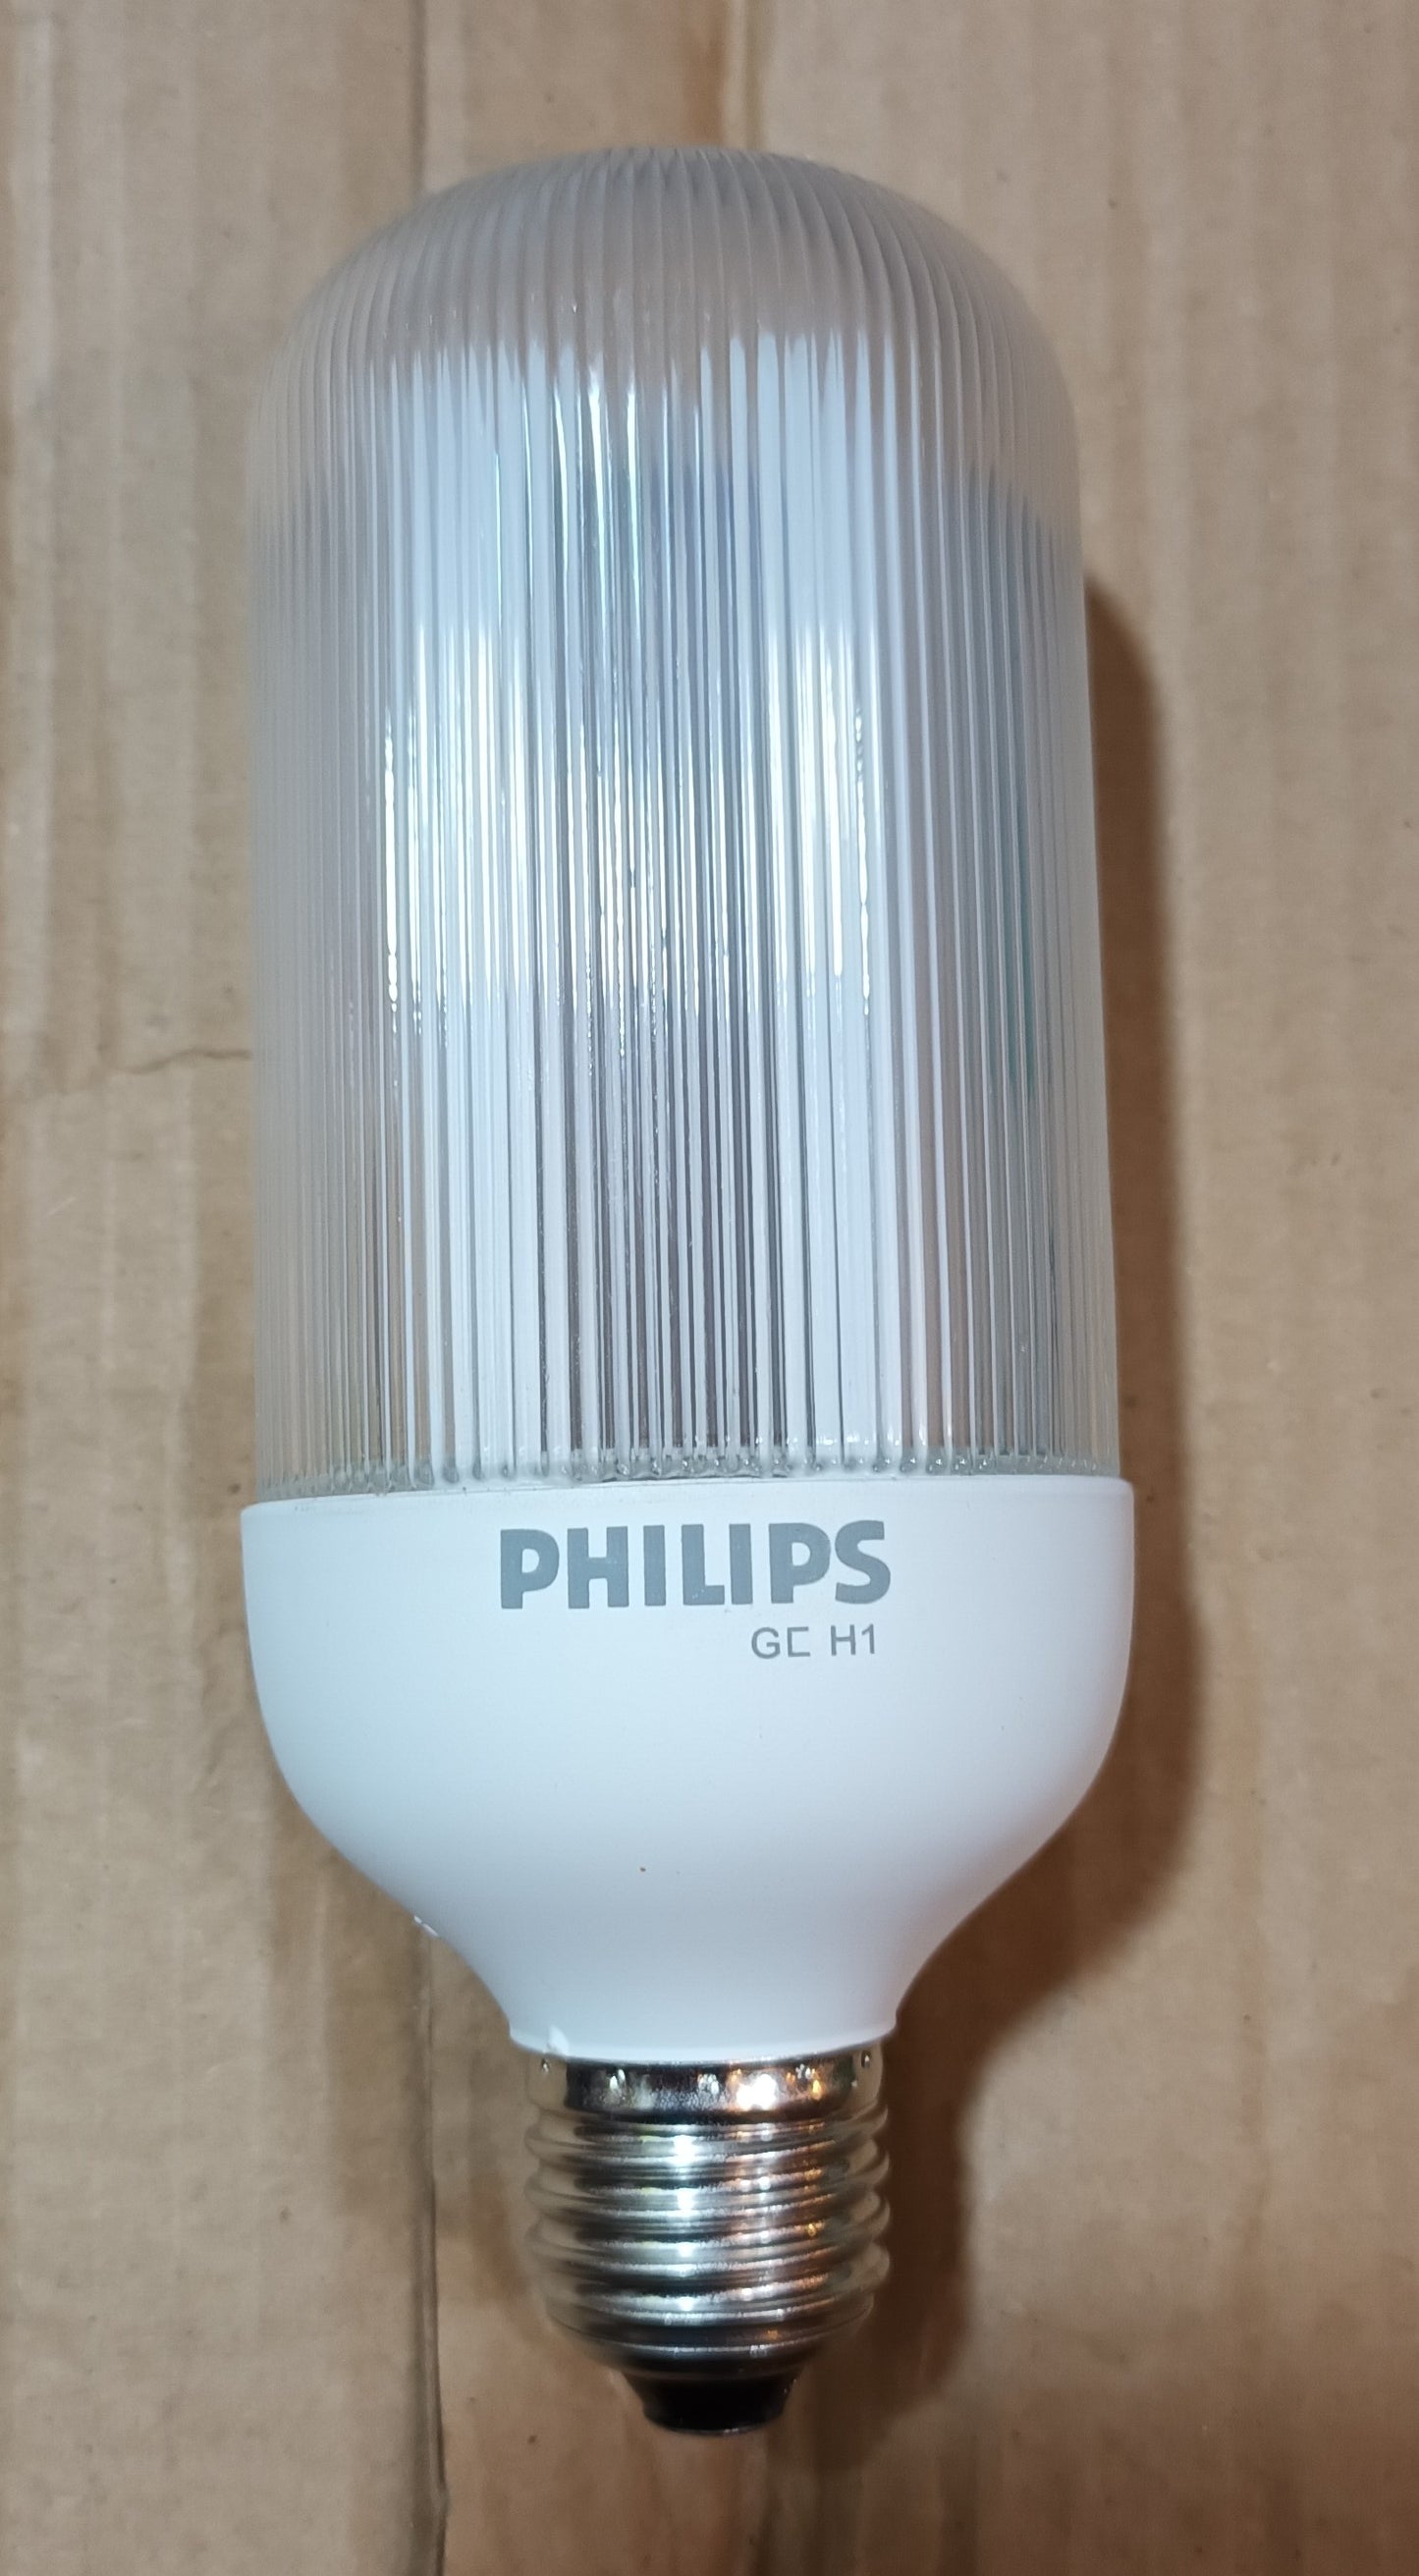 Philips sl-e Prismatic 17 watts = 75w ES / E27 warm white